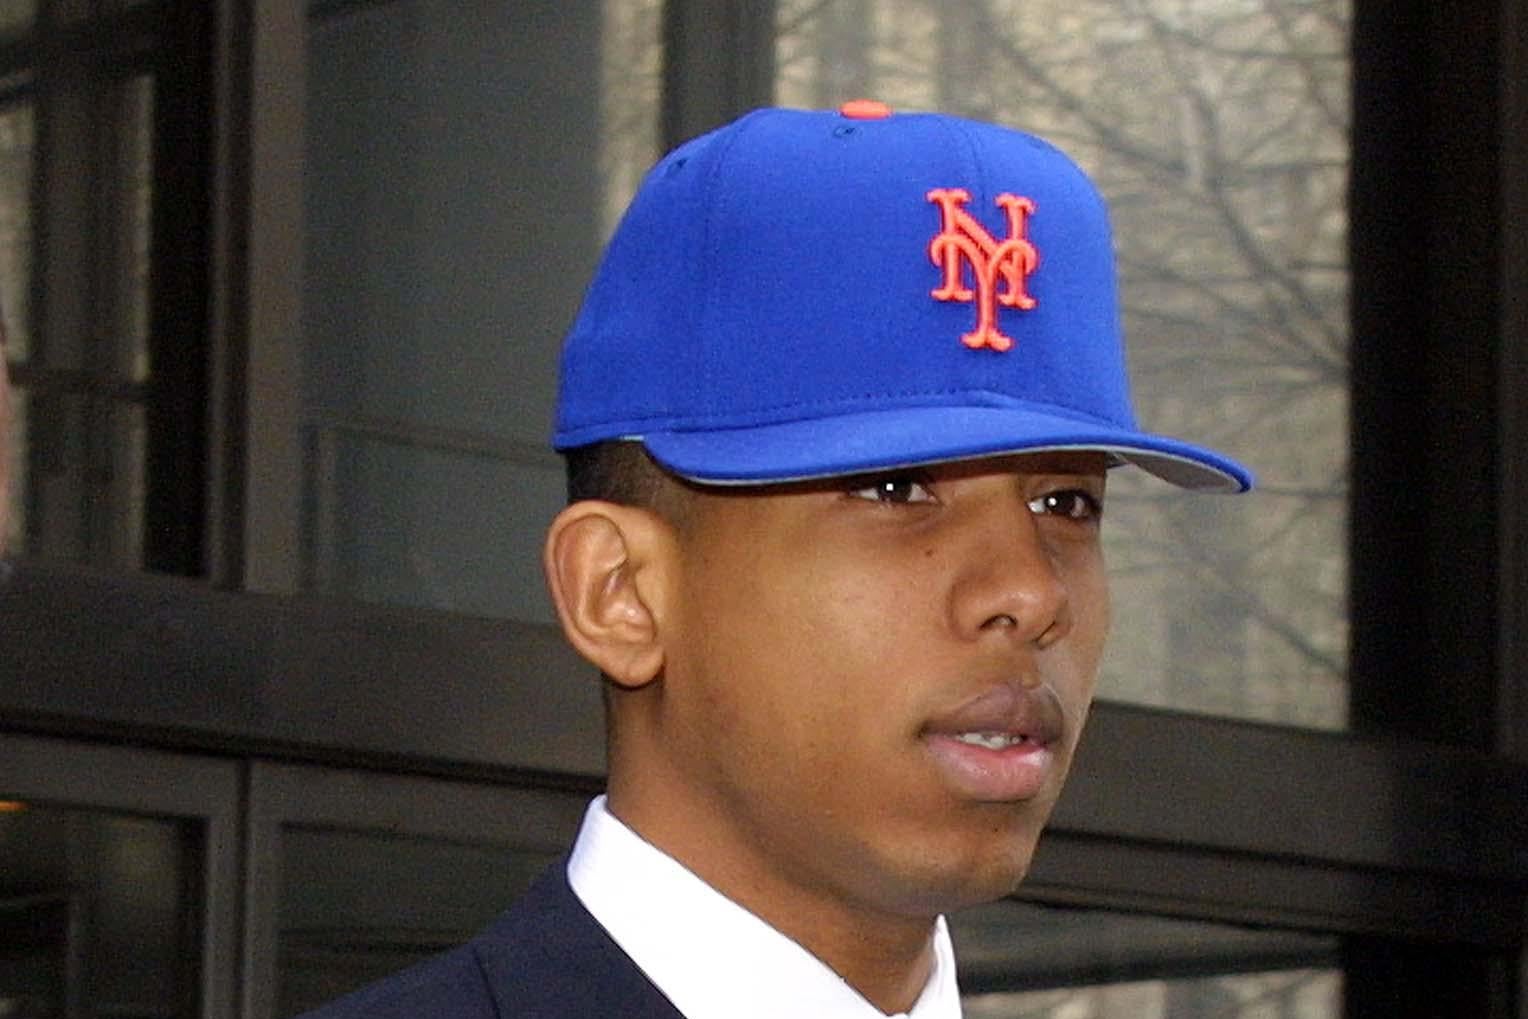 Shyne is seen wearing a Mets cap.